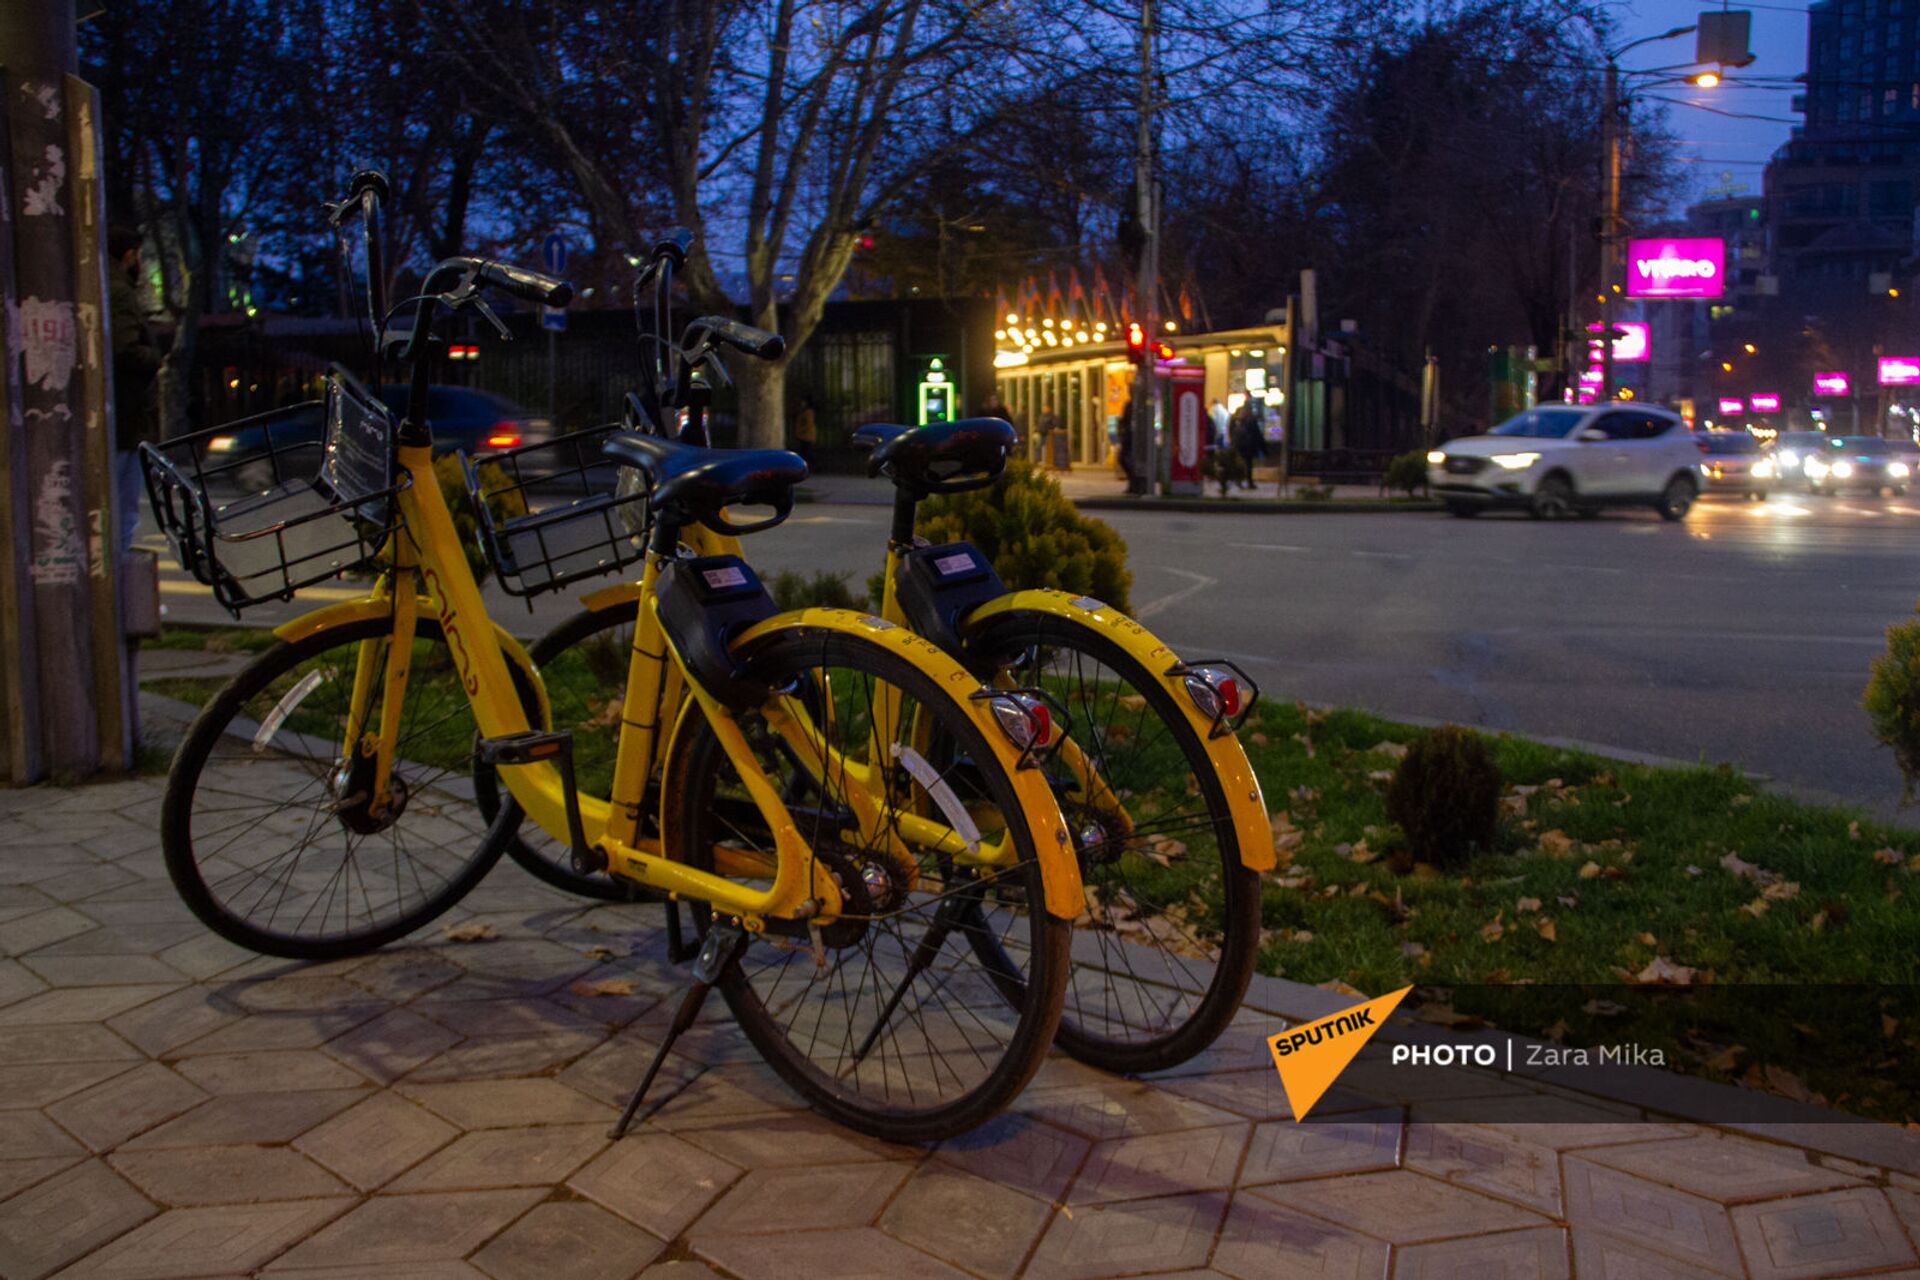 Փոքրիկ դրախտ հեծանվորդների համար. Վանաձորում հեծանիվ քշելն ավելի անվտանգ է, քան Երևանում - Sputnik Արմենիա, 1920, 07.06.2021